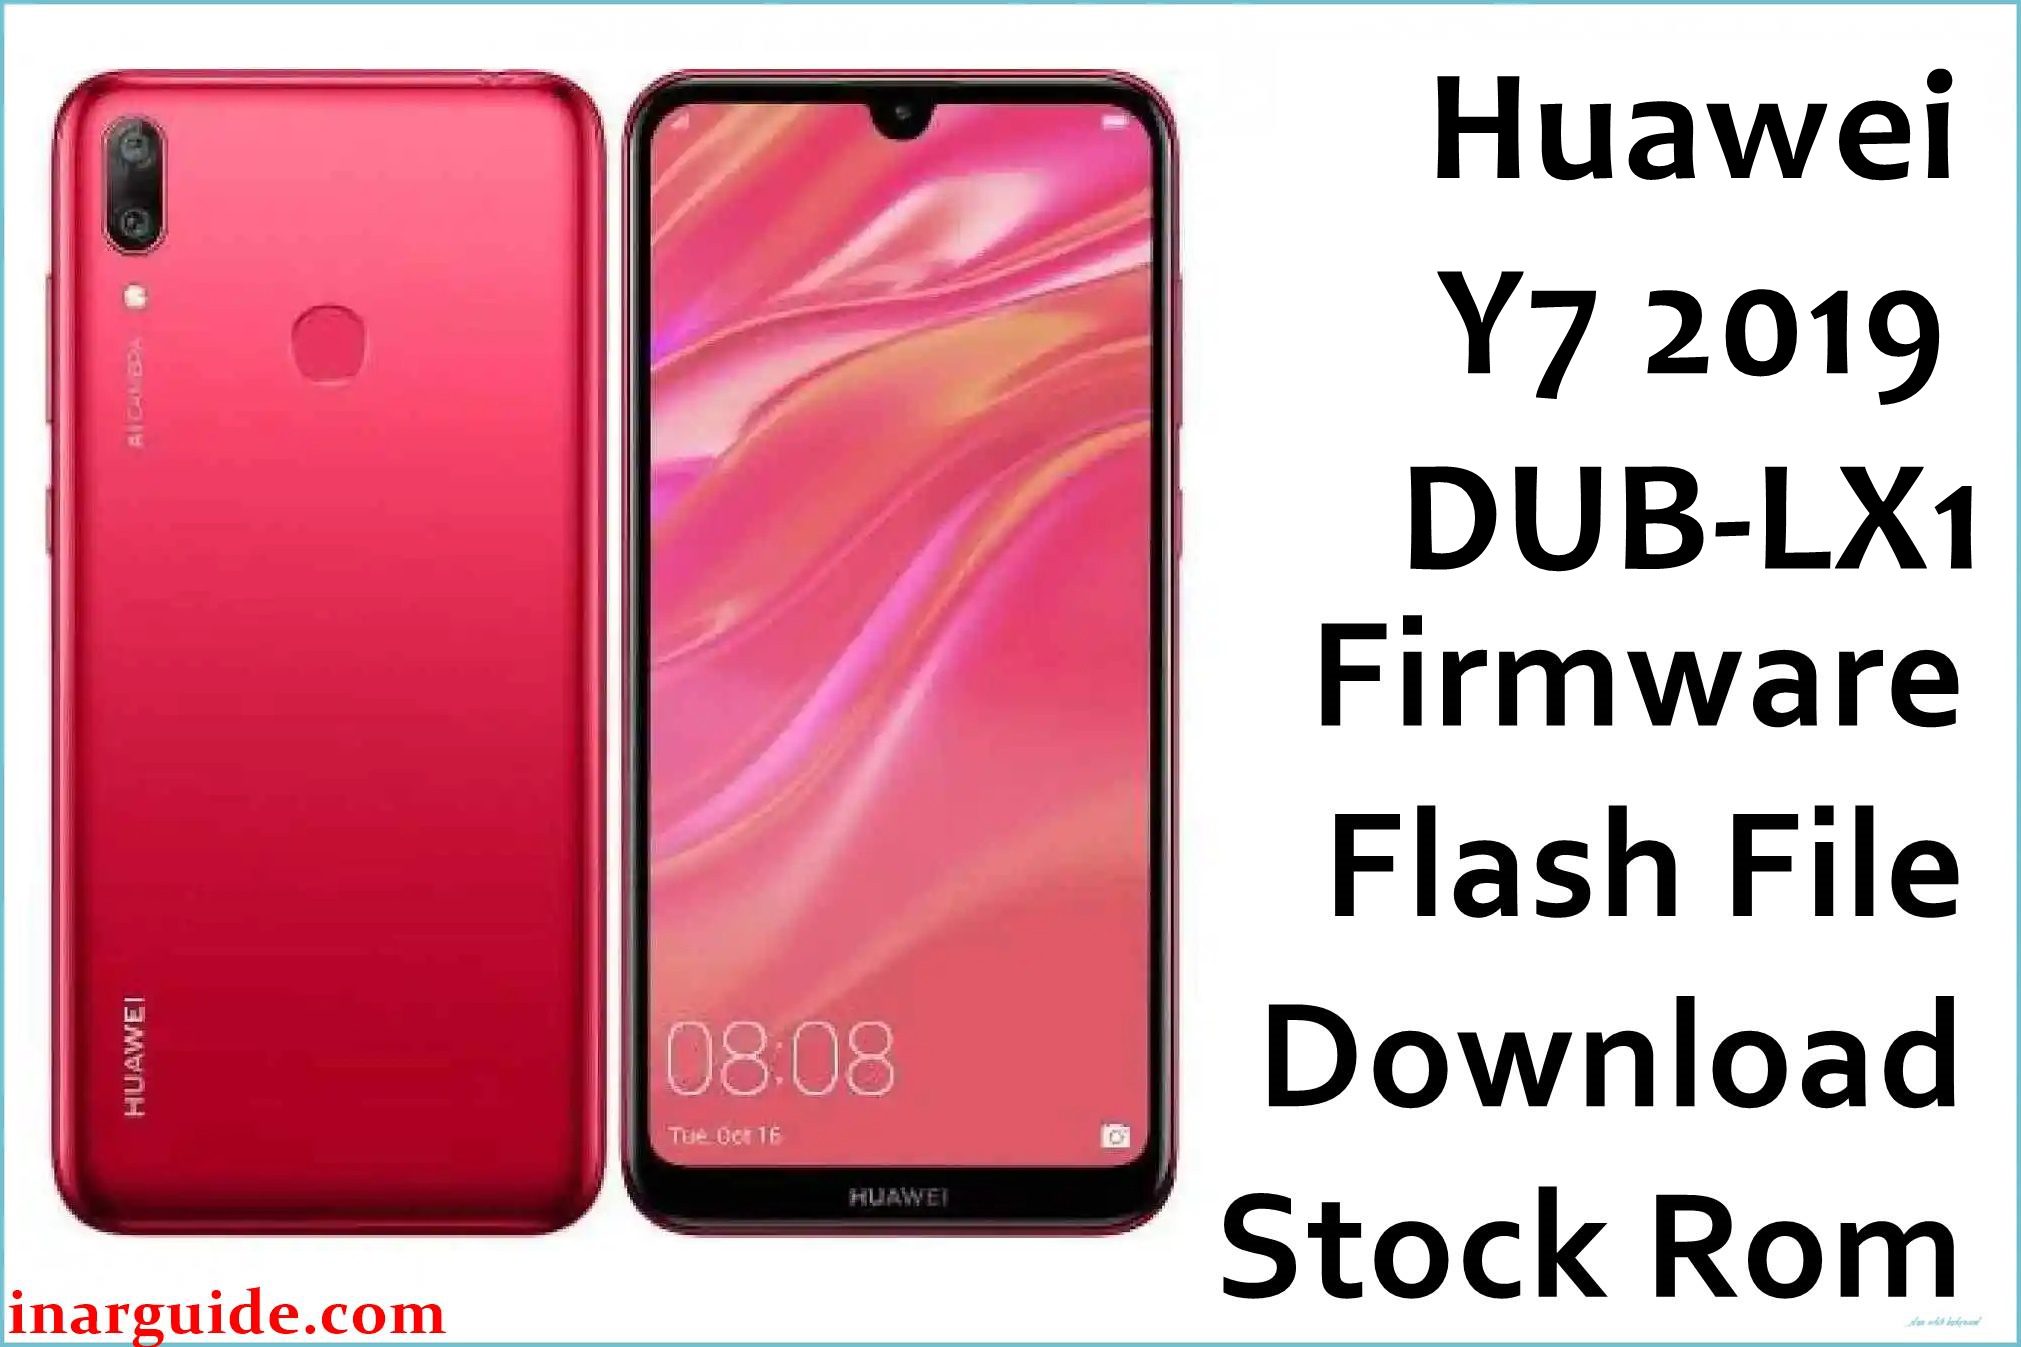 Huawei Y7 2019 DUB LX1